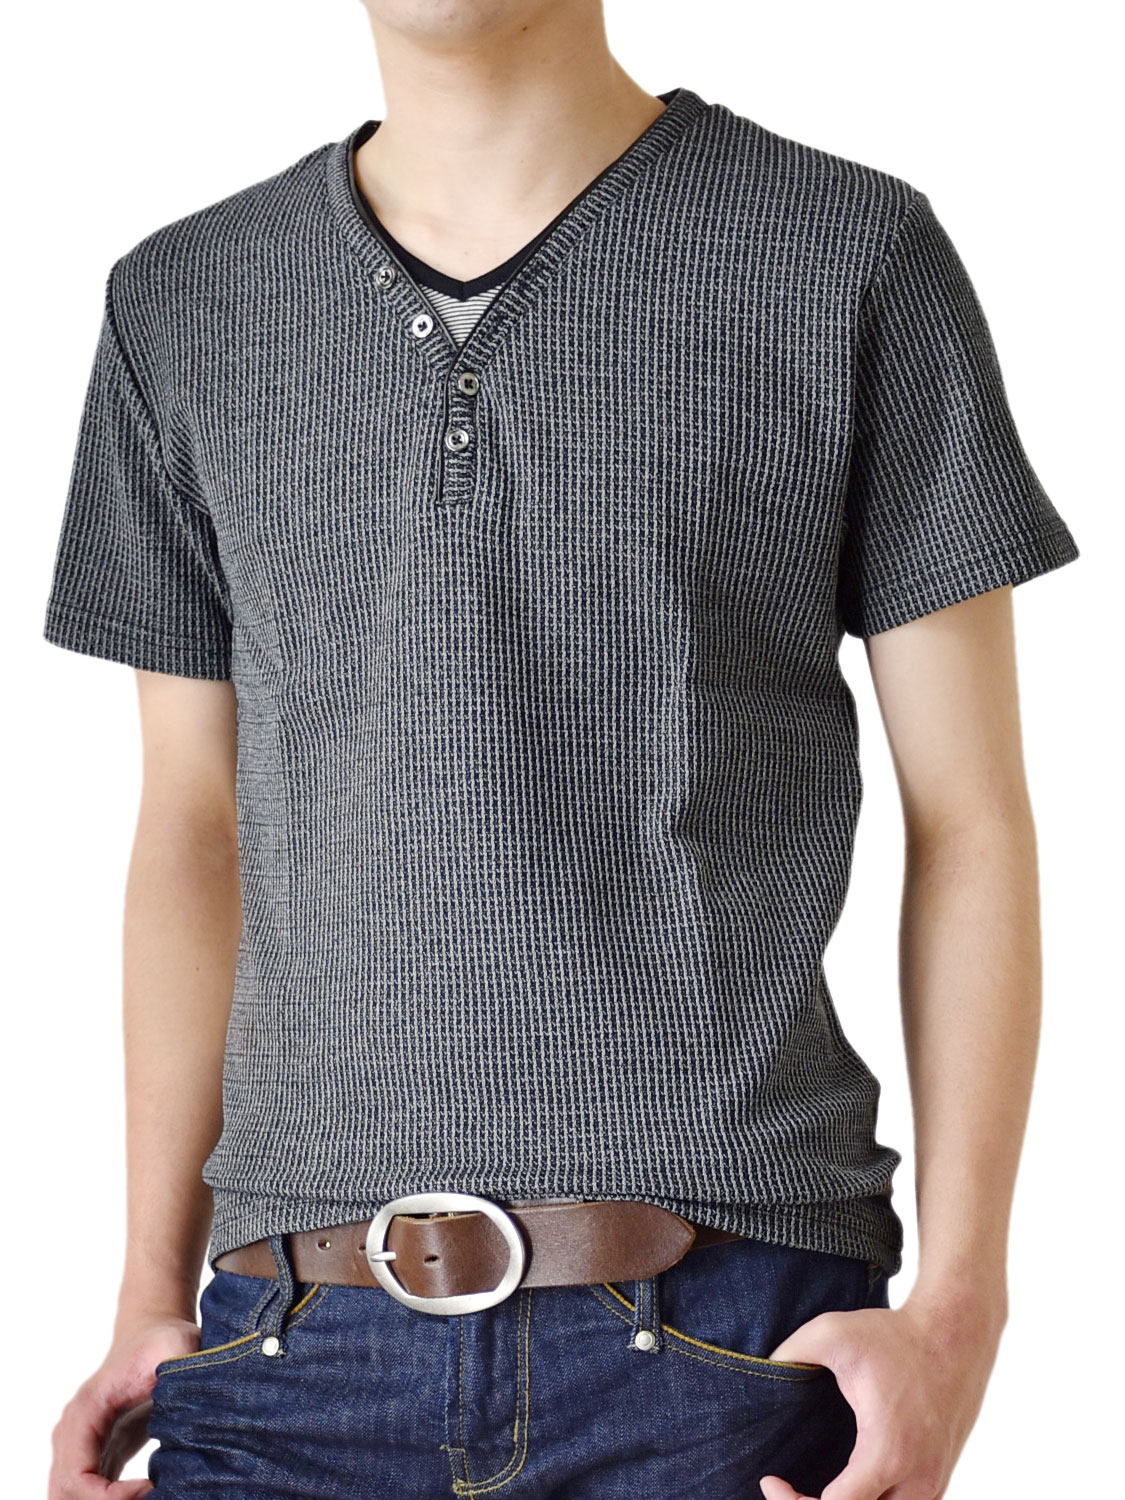 カットソー メンズ Ｙヘンリー シャドーストライプ Tシャツ 半袖 送料無料 通販M《M2》